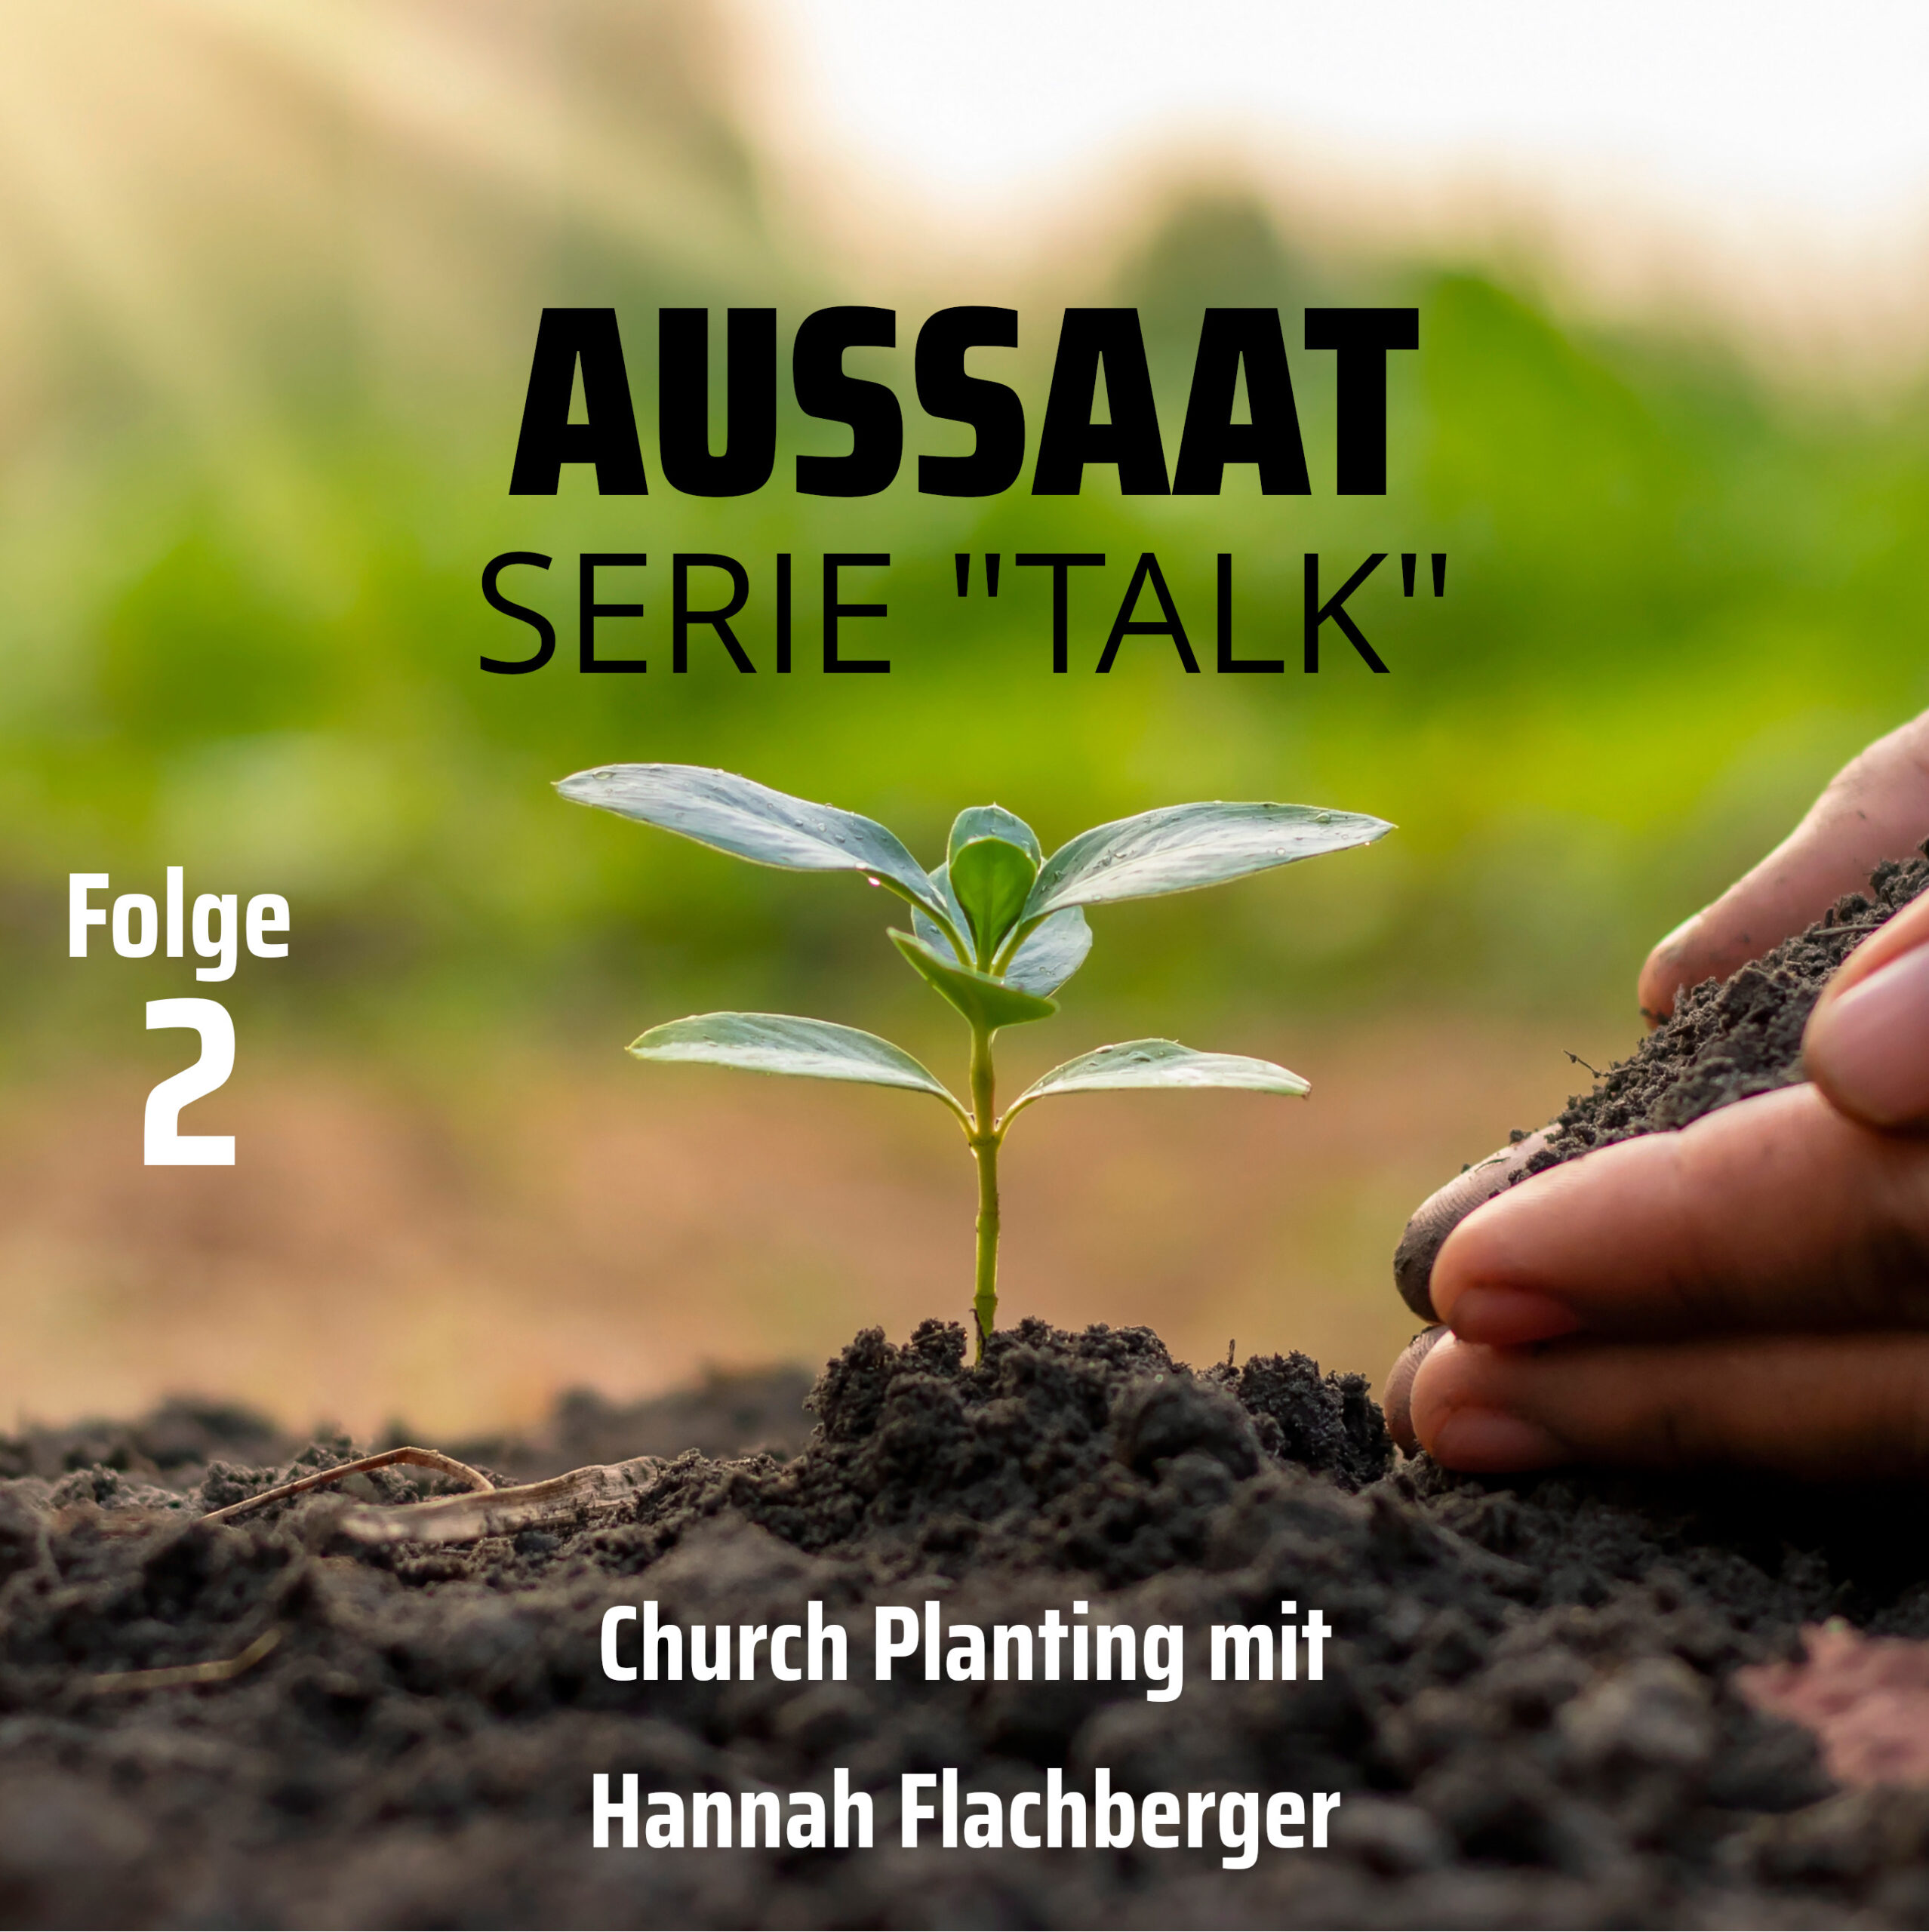 Church-Planting mit  Hannah Flachberger